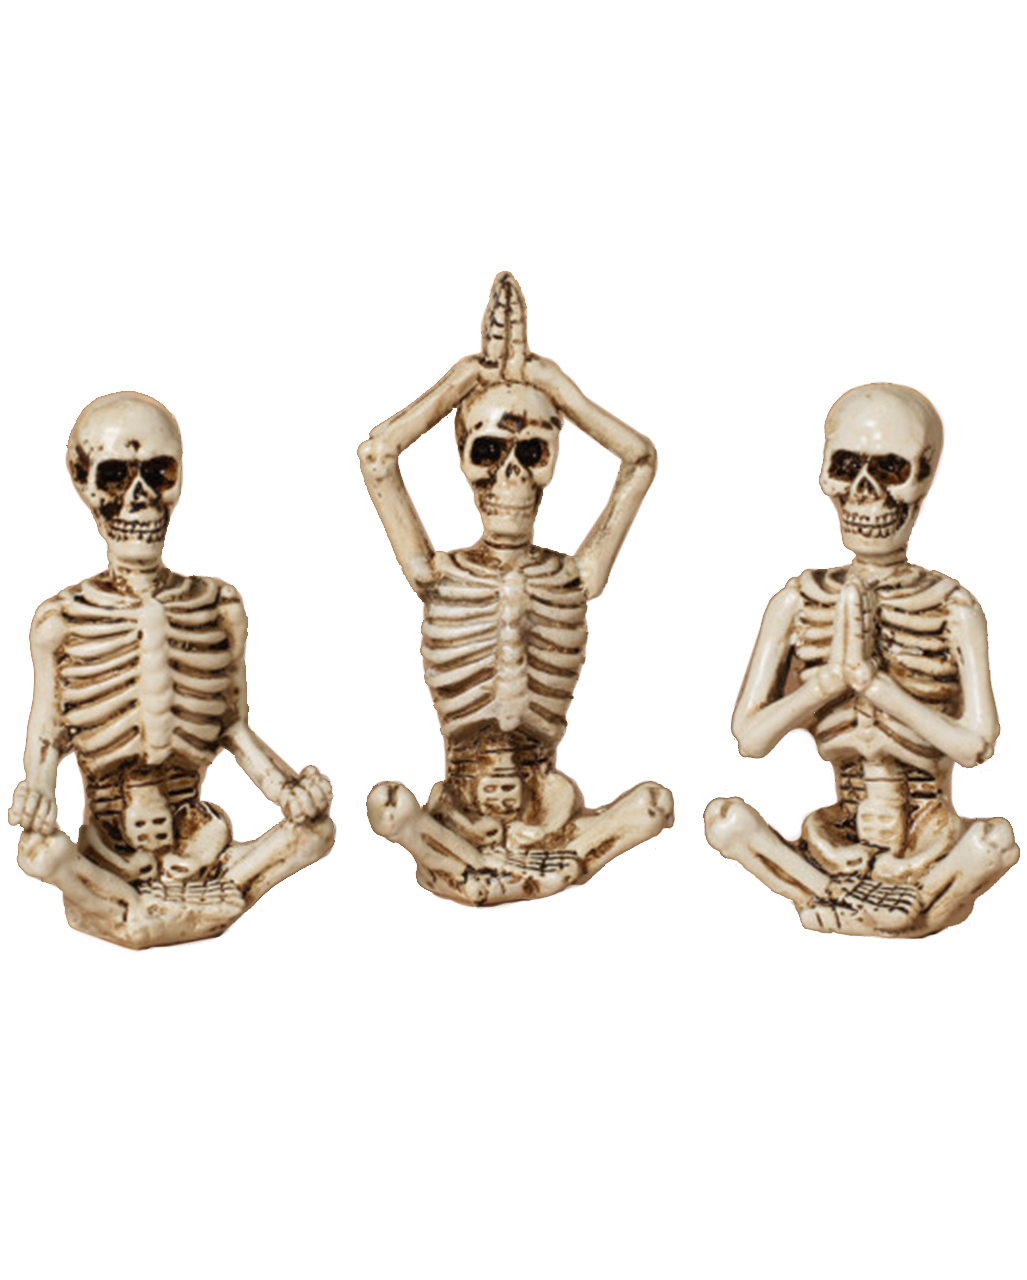 https://inst-2.cdn.shockers.de/hs_cdn/out/pictures/master/product/1/yoga-skelett-figuren-3er-set-8cm-yoga-skeleton-figures-set-of-3-gothic-deko-54671.jpg